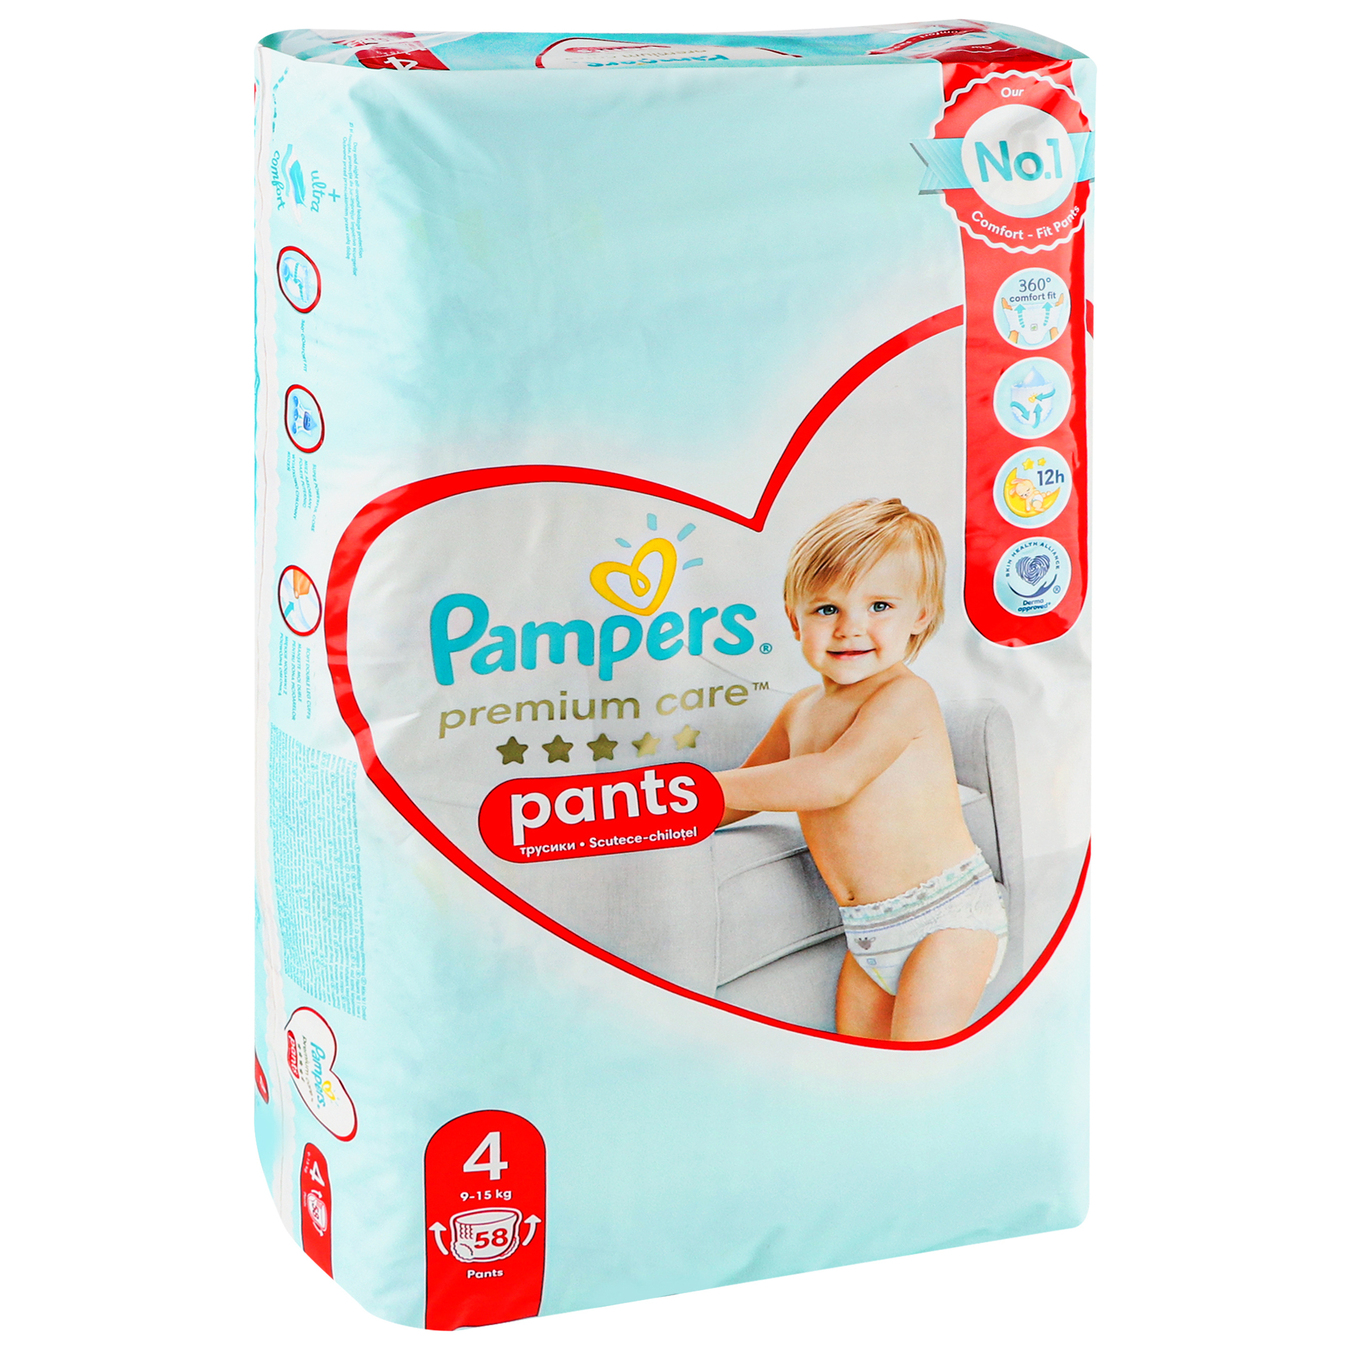 Pampers Diaper panties Premium Care 4 42248 kg children's 58 pcs 5